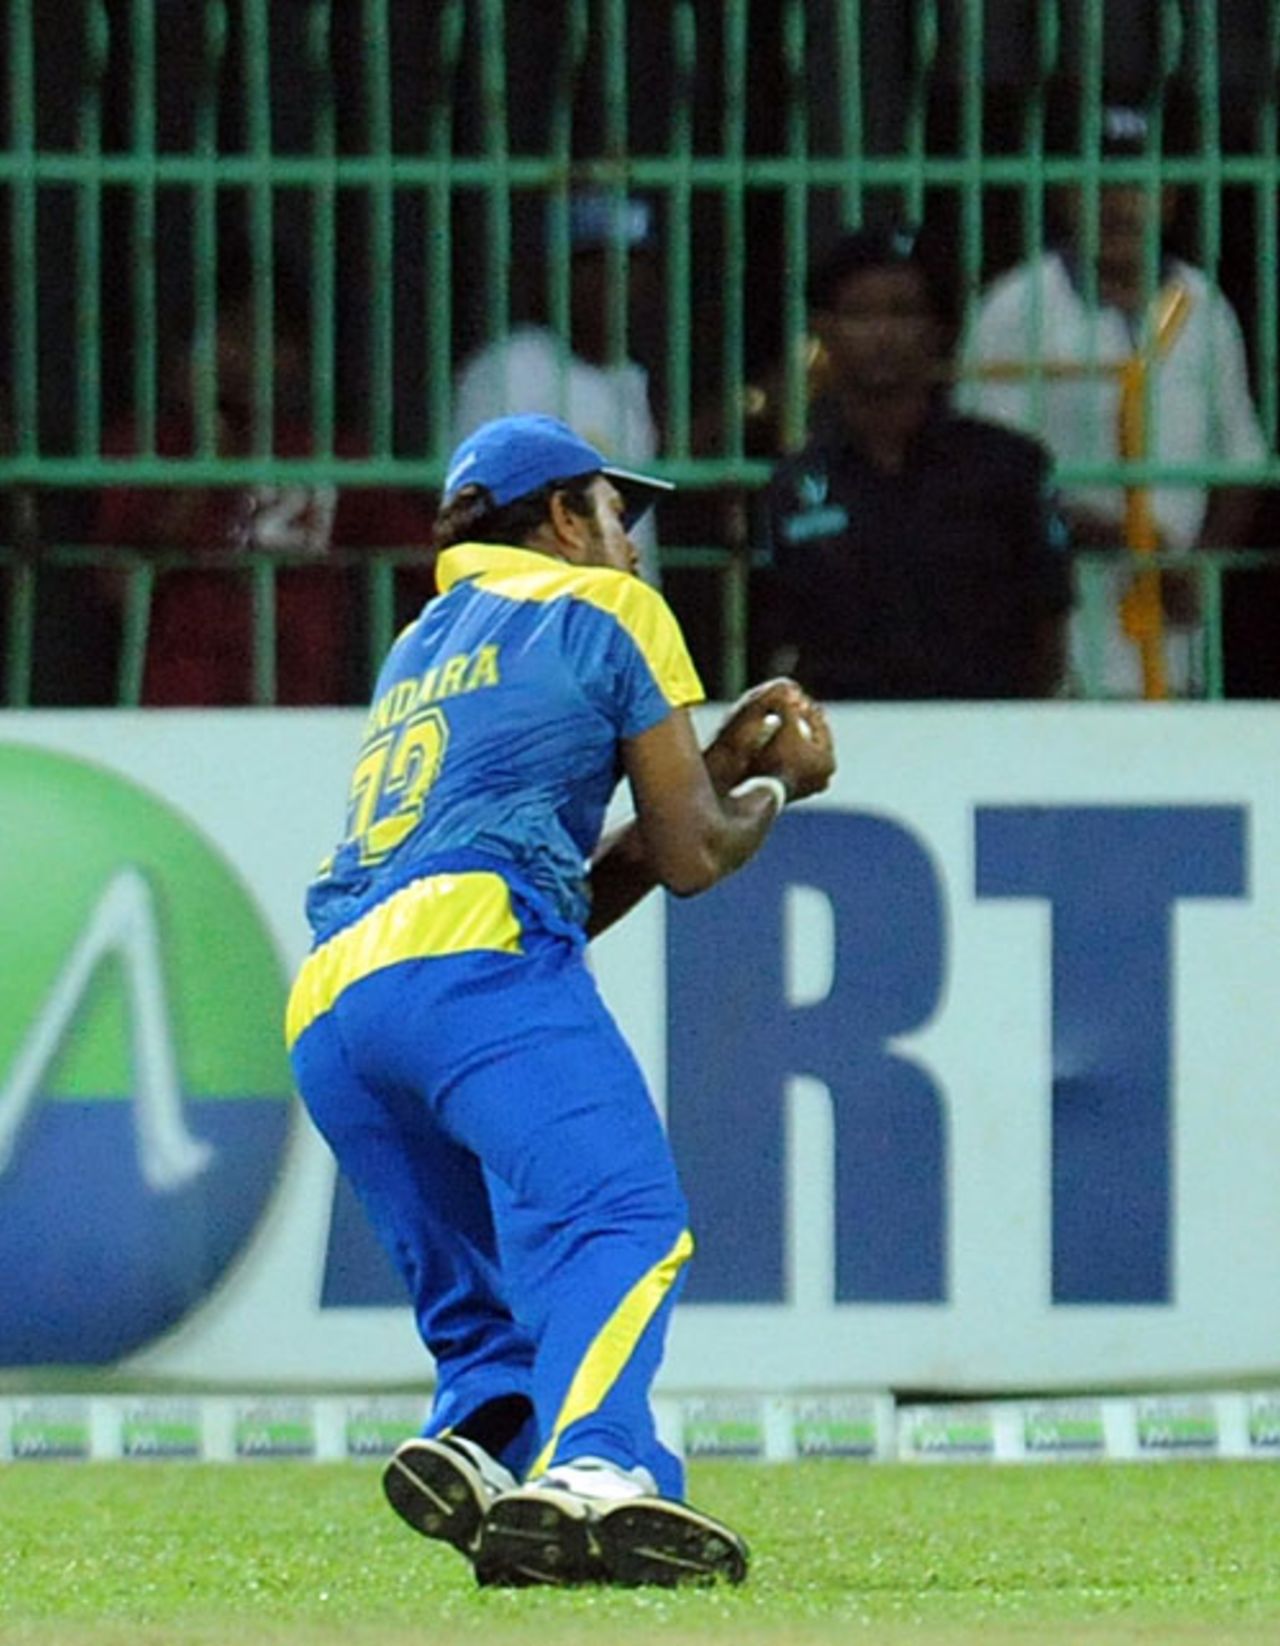 Malinga Bandara takes a catch to dismiss Jesse Ryder, Sri Lanka v New Zealand, 1st Twenty20, Colombo, September 2, 2009